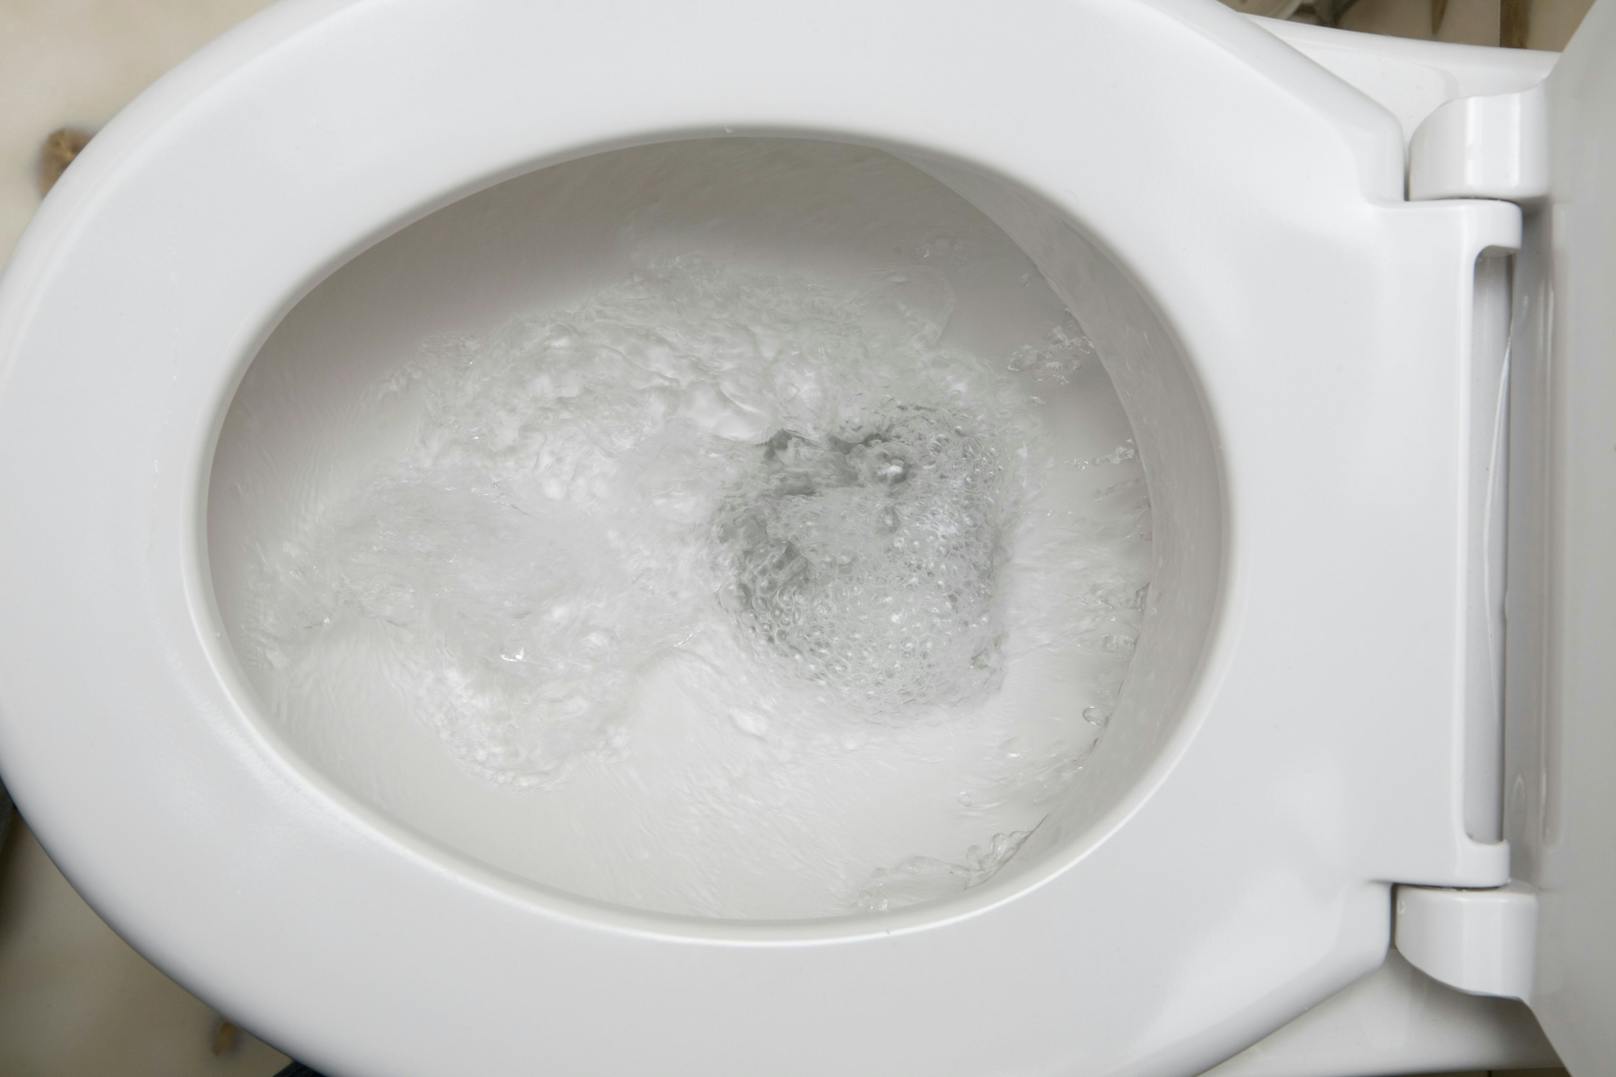 Ein Ehepaar in Italien erhielt nach 18 Jahren eine Entschädigung. Grund dafür war eine zu laute Toilettenspülung der Nachbarn.